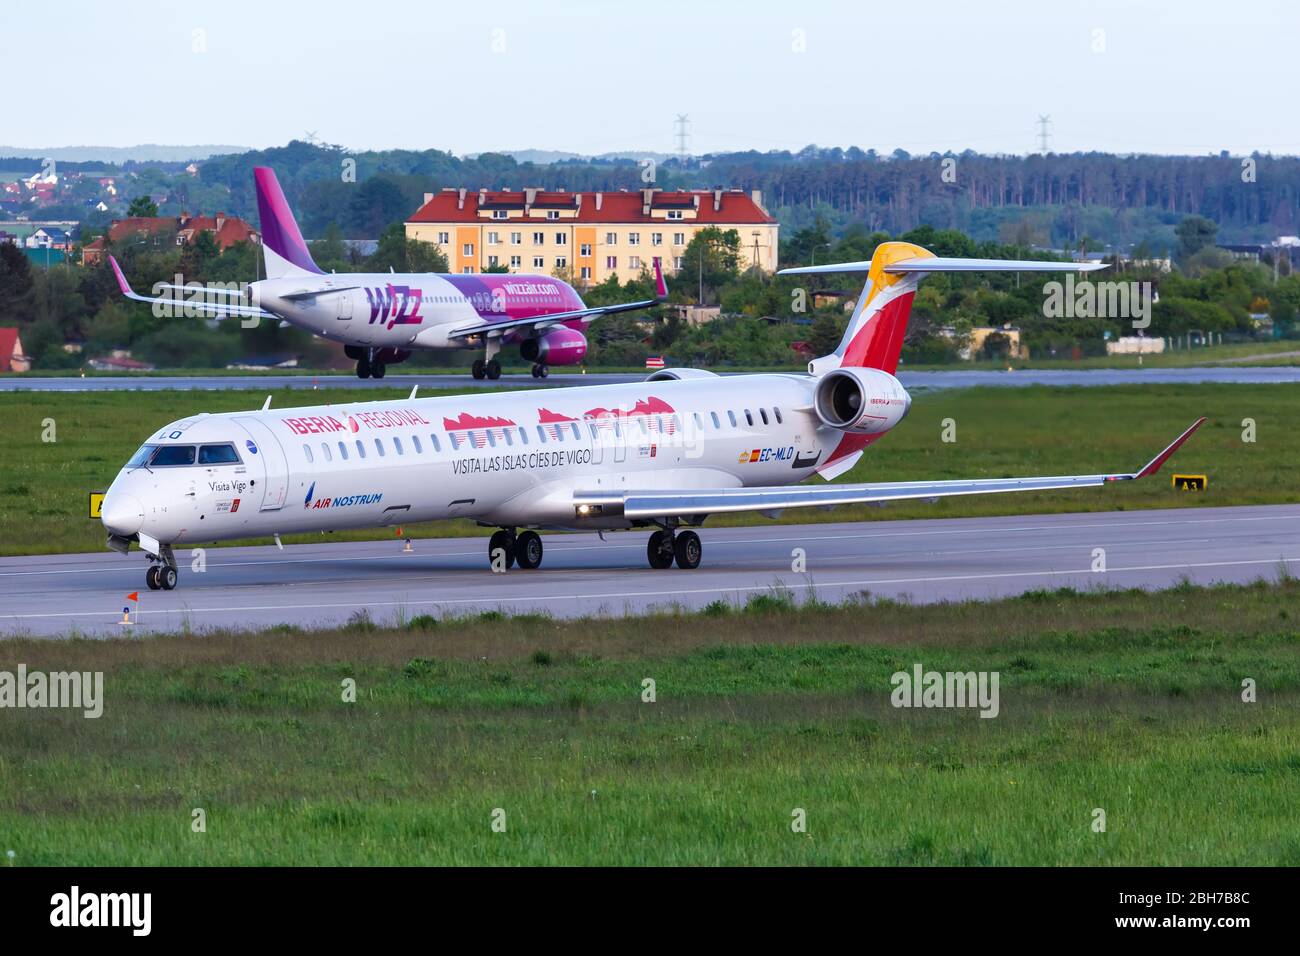 Gdansk, Polonia – 29 de mayo de 2019: Avión regional Iberia Air Nostrum Bombardier CRJ-1000 en el aeropuerto de Gdansk (GDN) en Polonia. Foto de stock